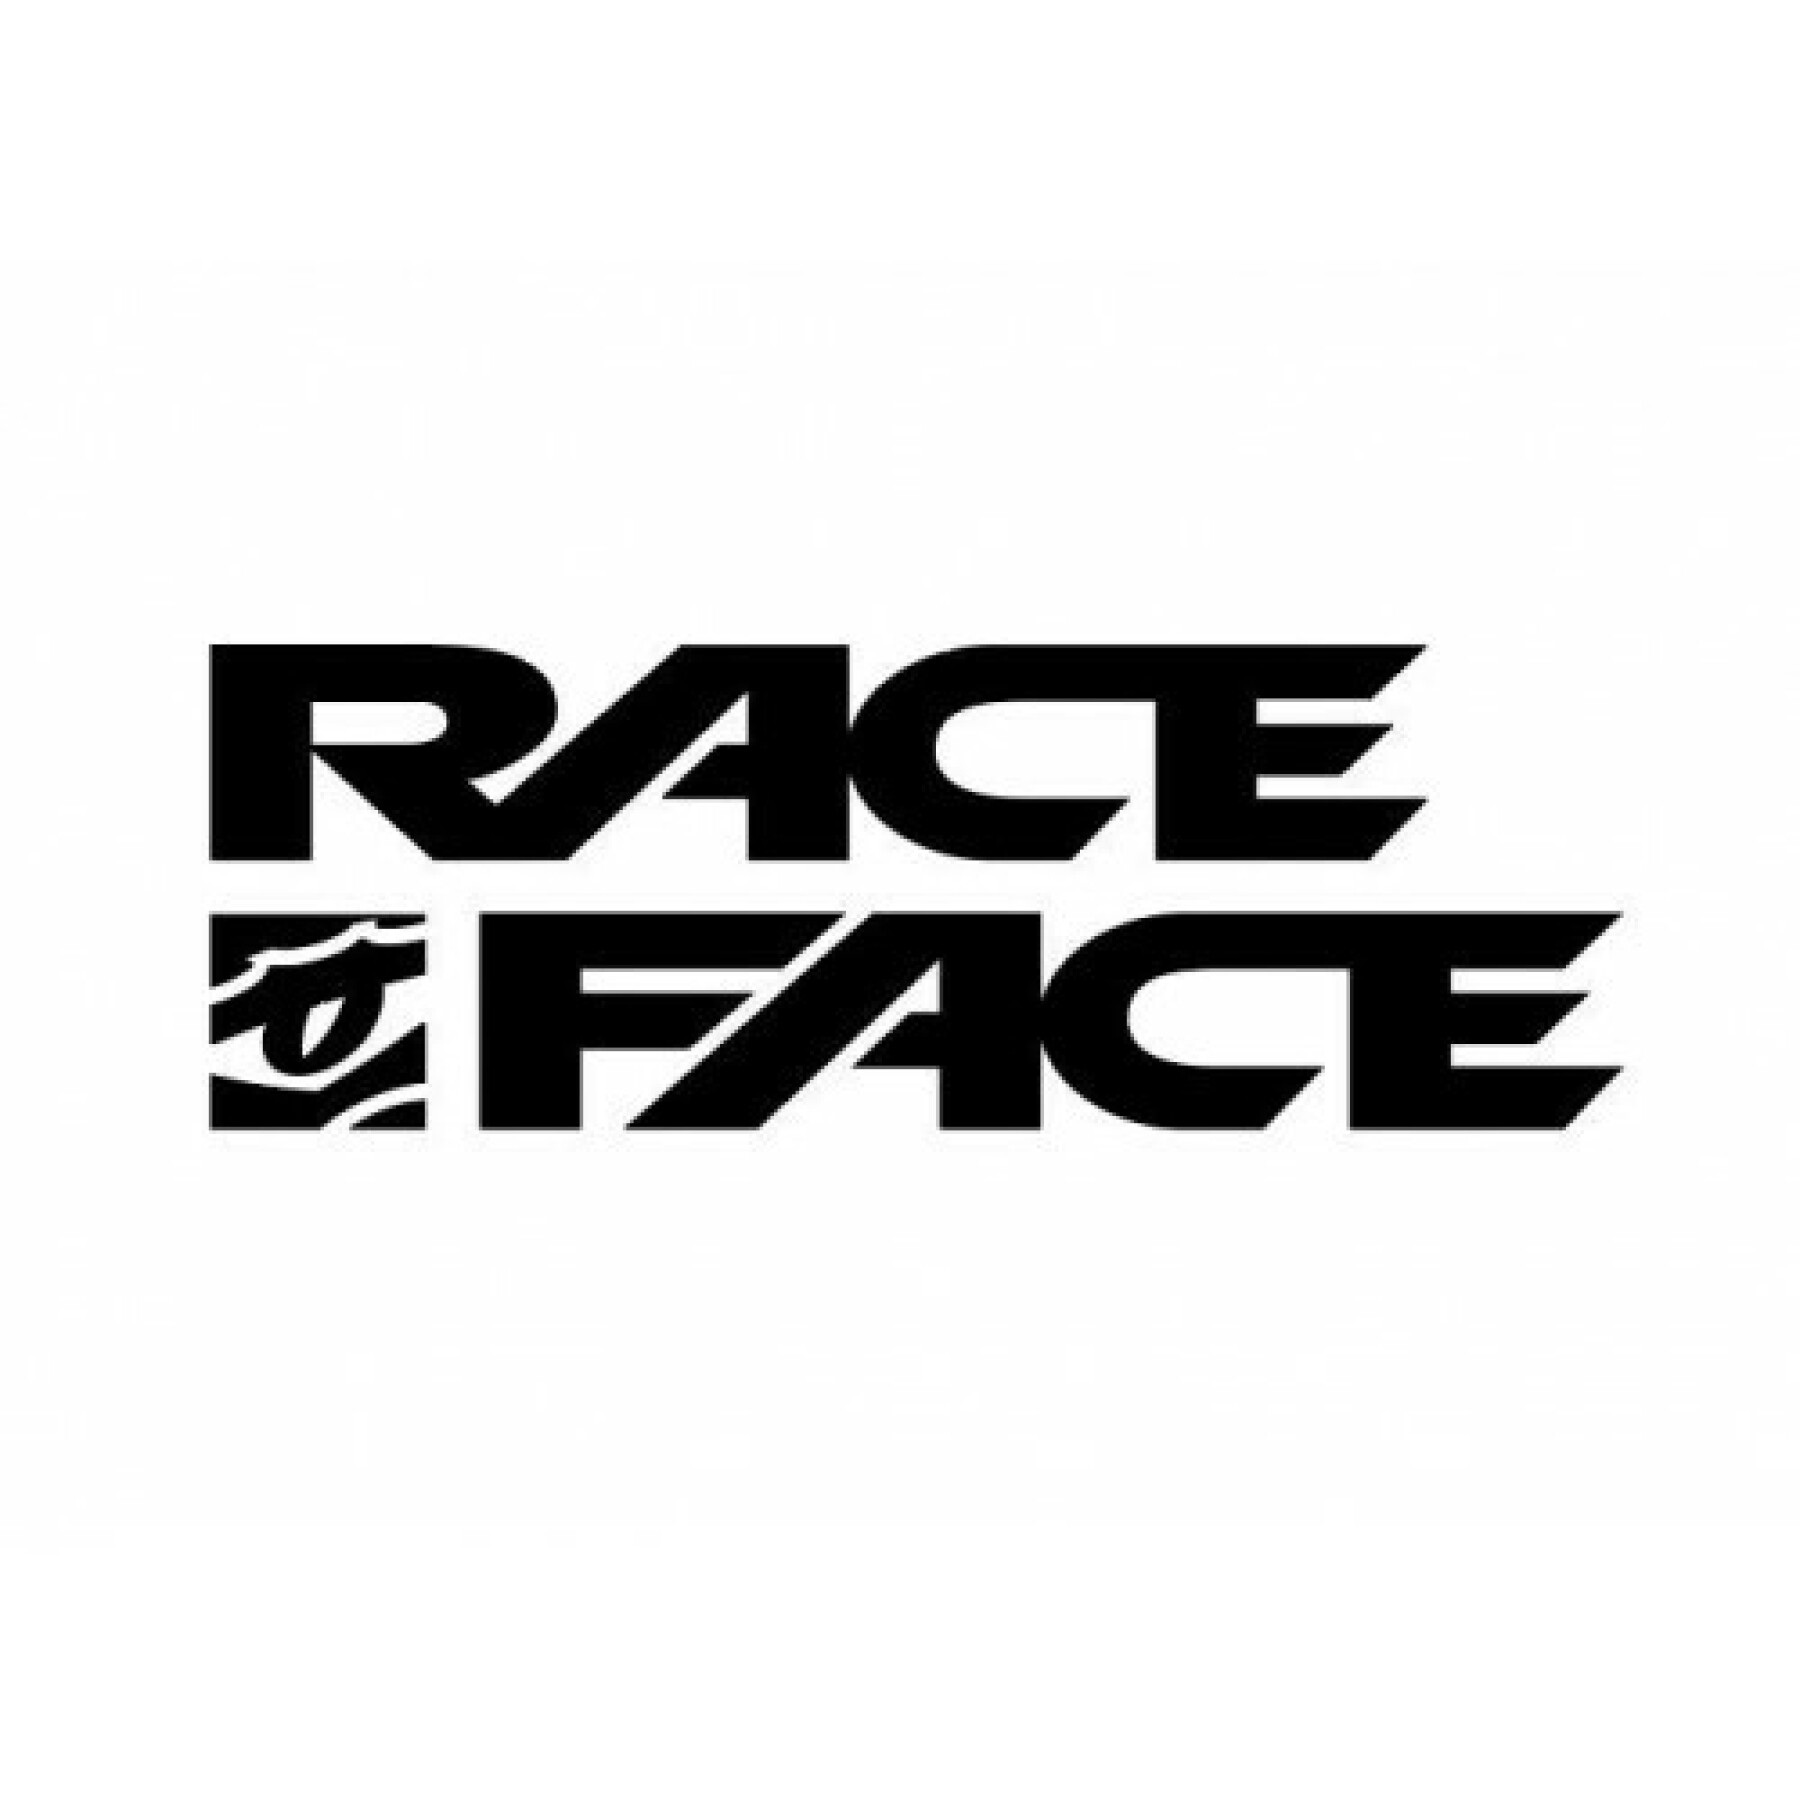 Rim Race Face arc heavyduty 30 - 29 - 32t